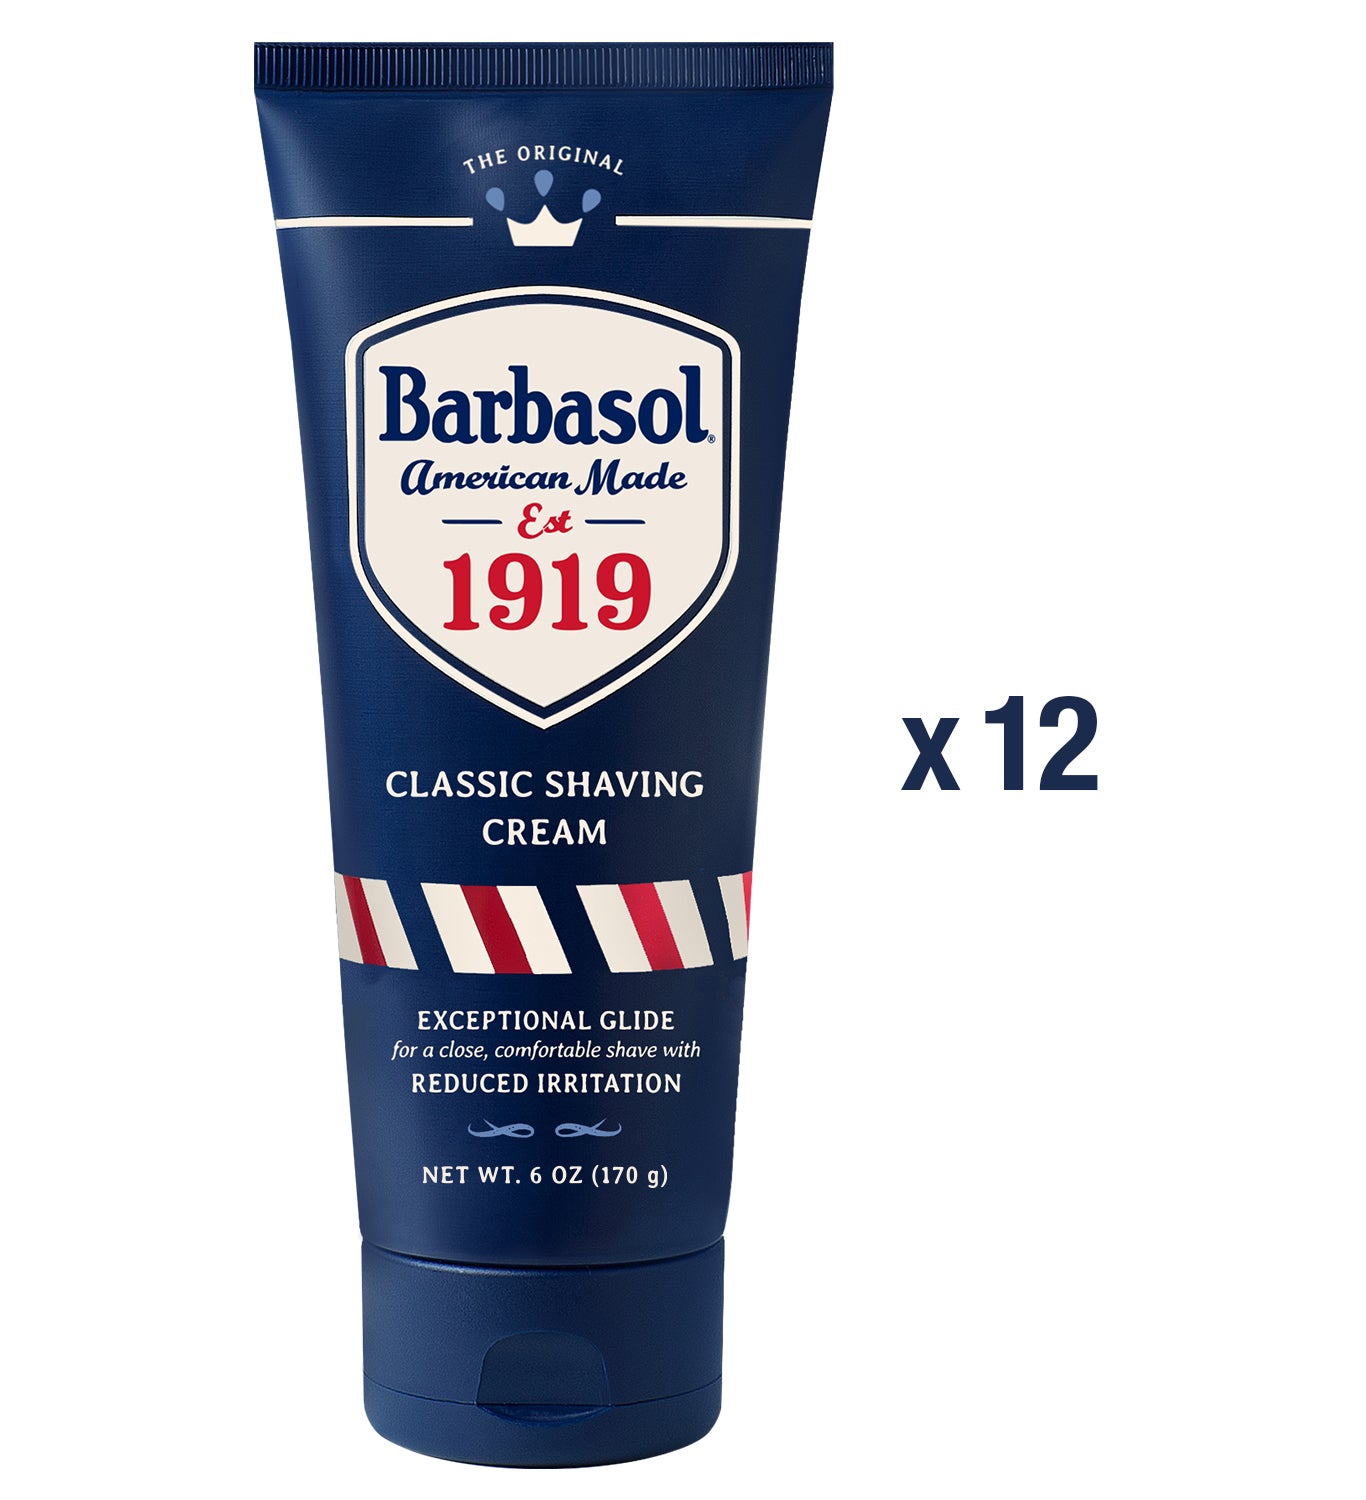 Barbasol 1919 Classic Shaving Cream Tube, 6oz (12ct) Case